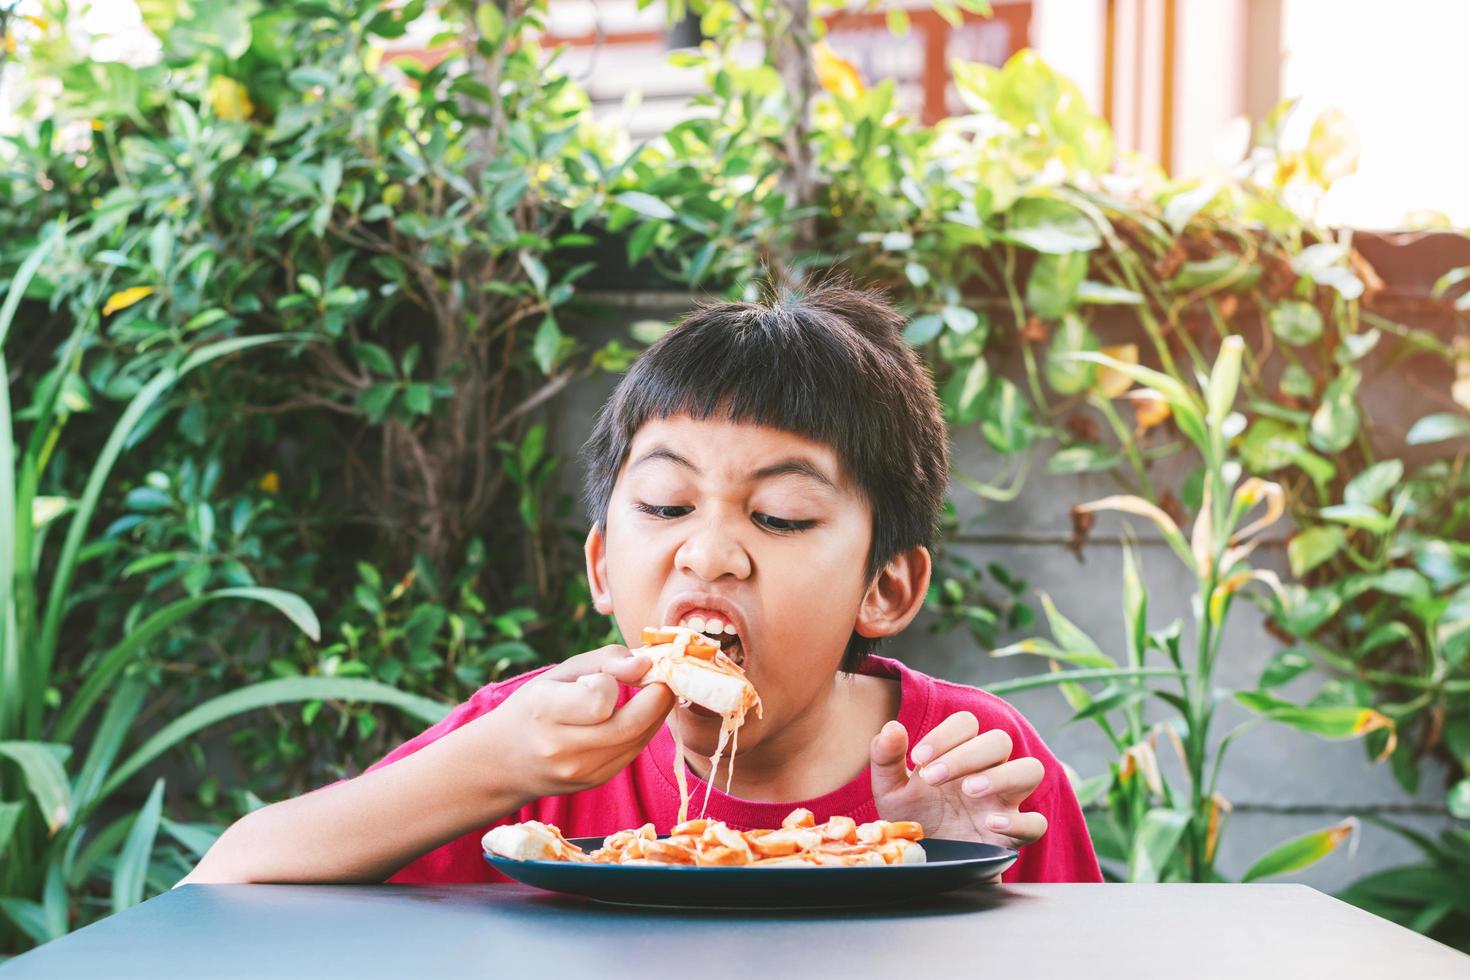 asiatique garçon mignon assis joyeusement en train de manger de la pizza photo